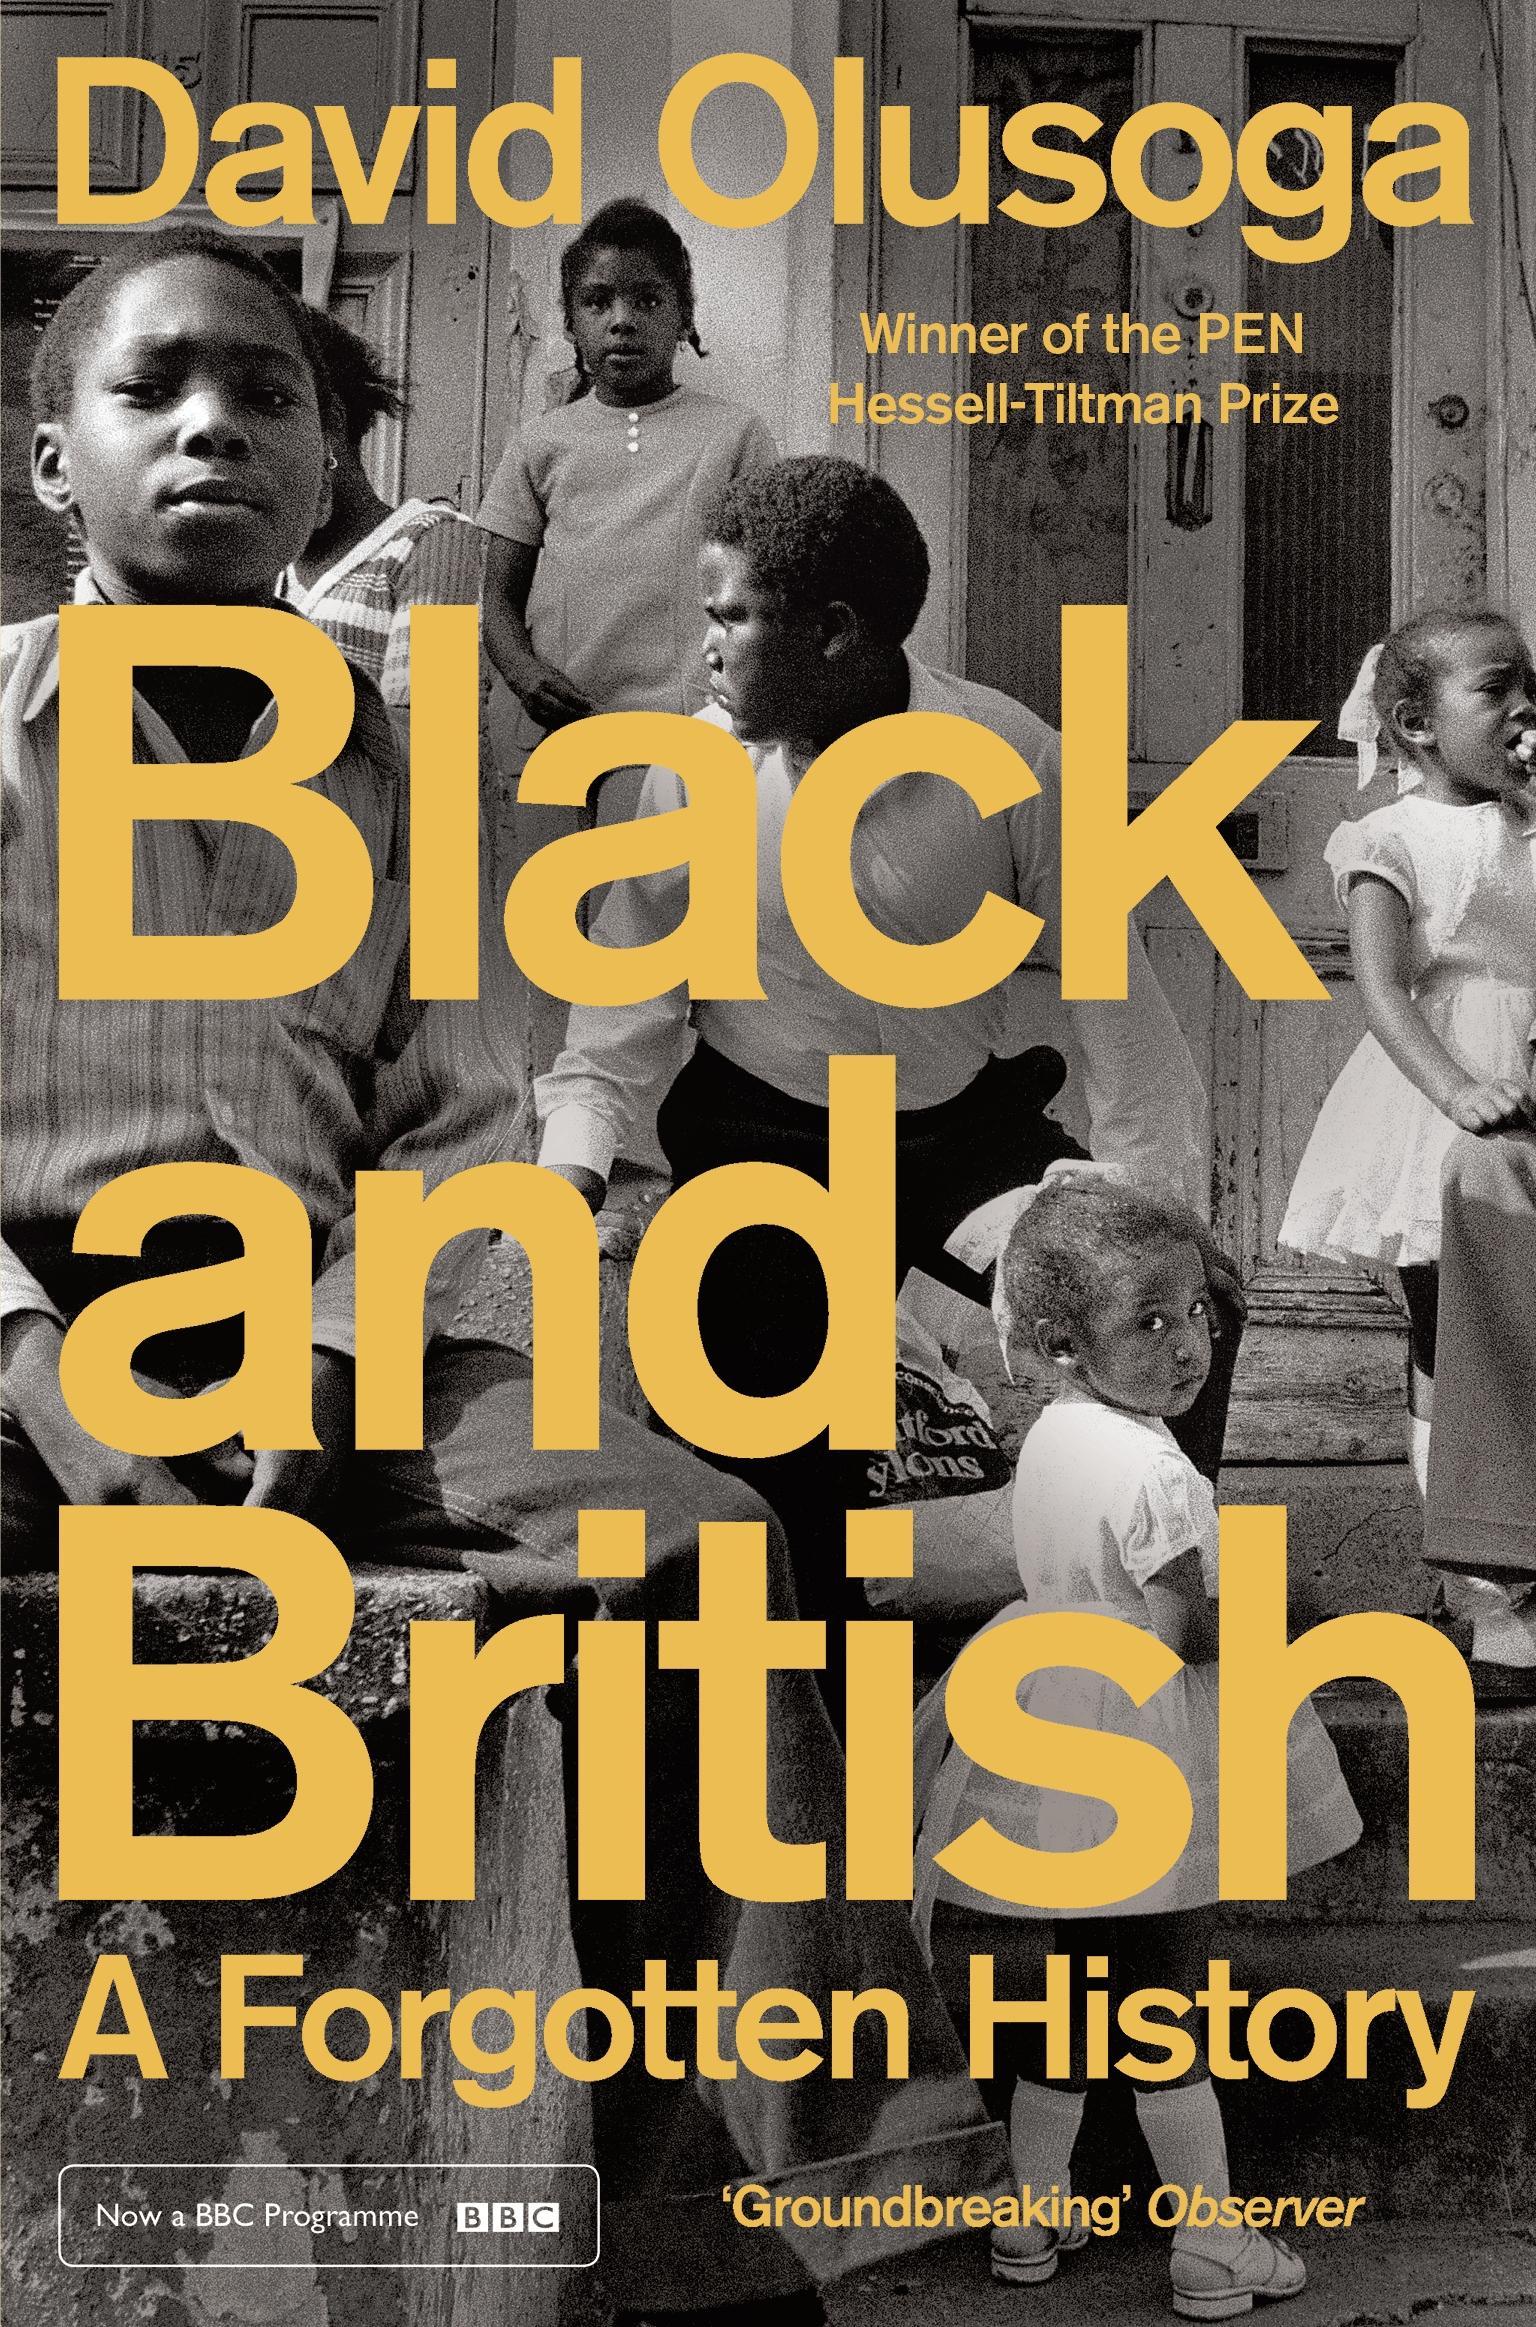 Black and British - David Olusoga